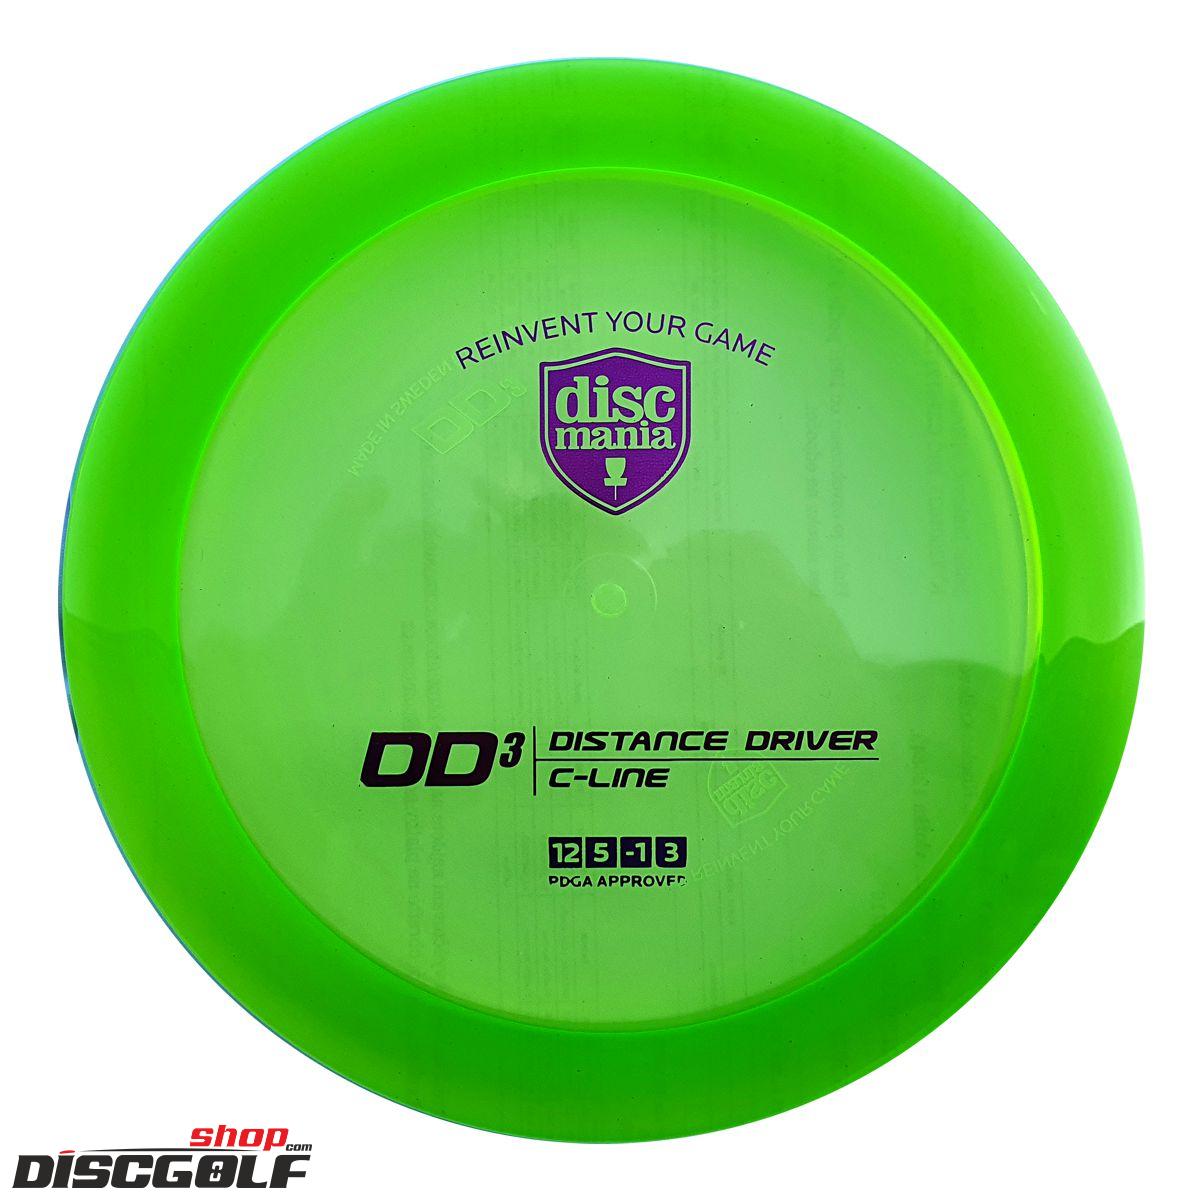 Discmania DD3 C-Line (discgolf)